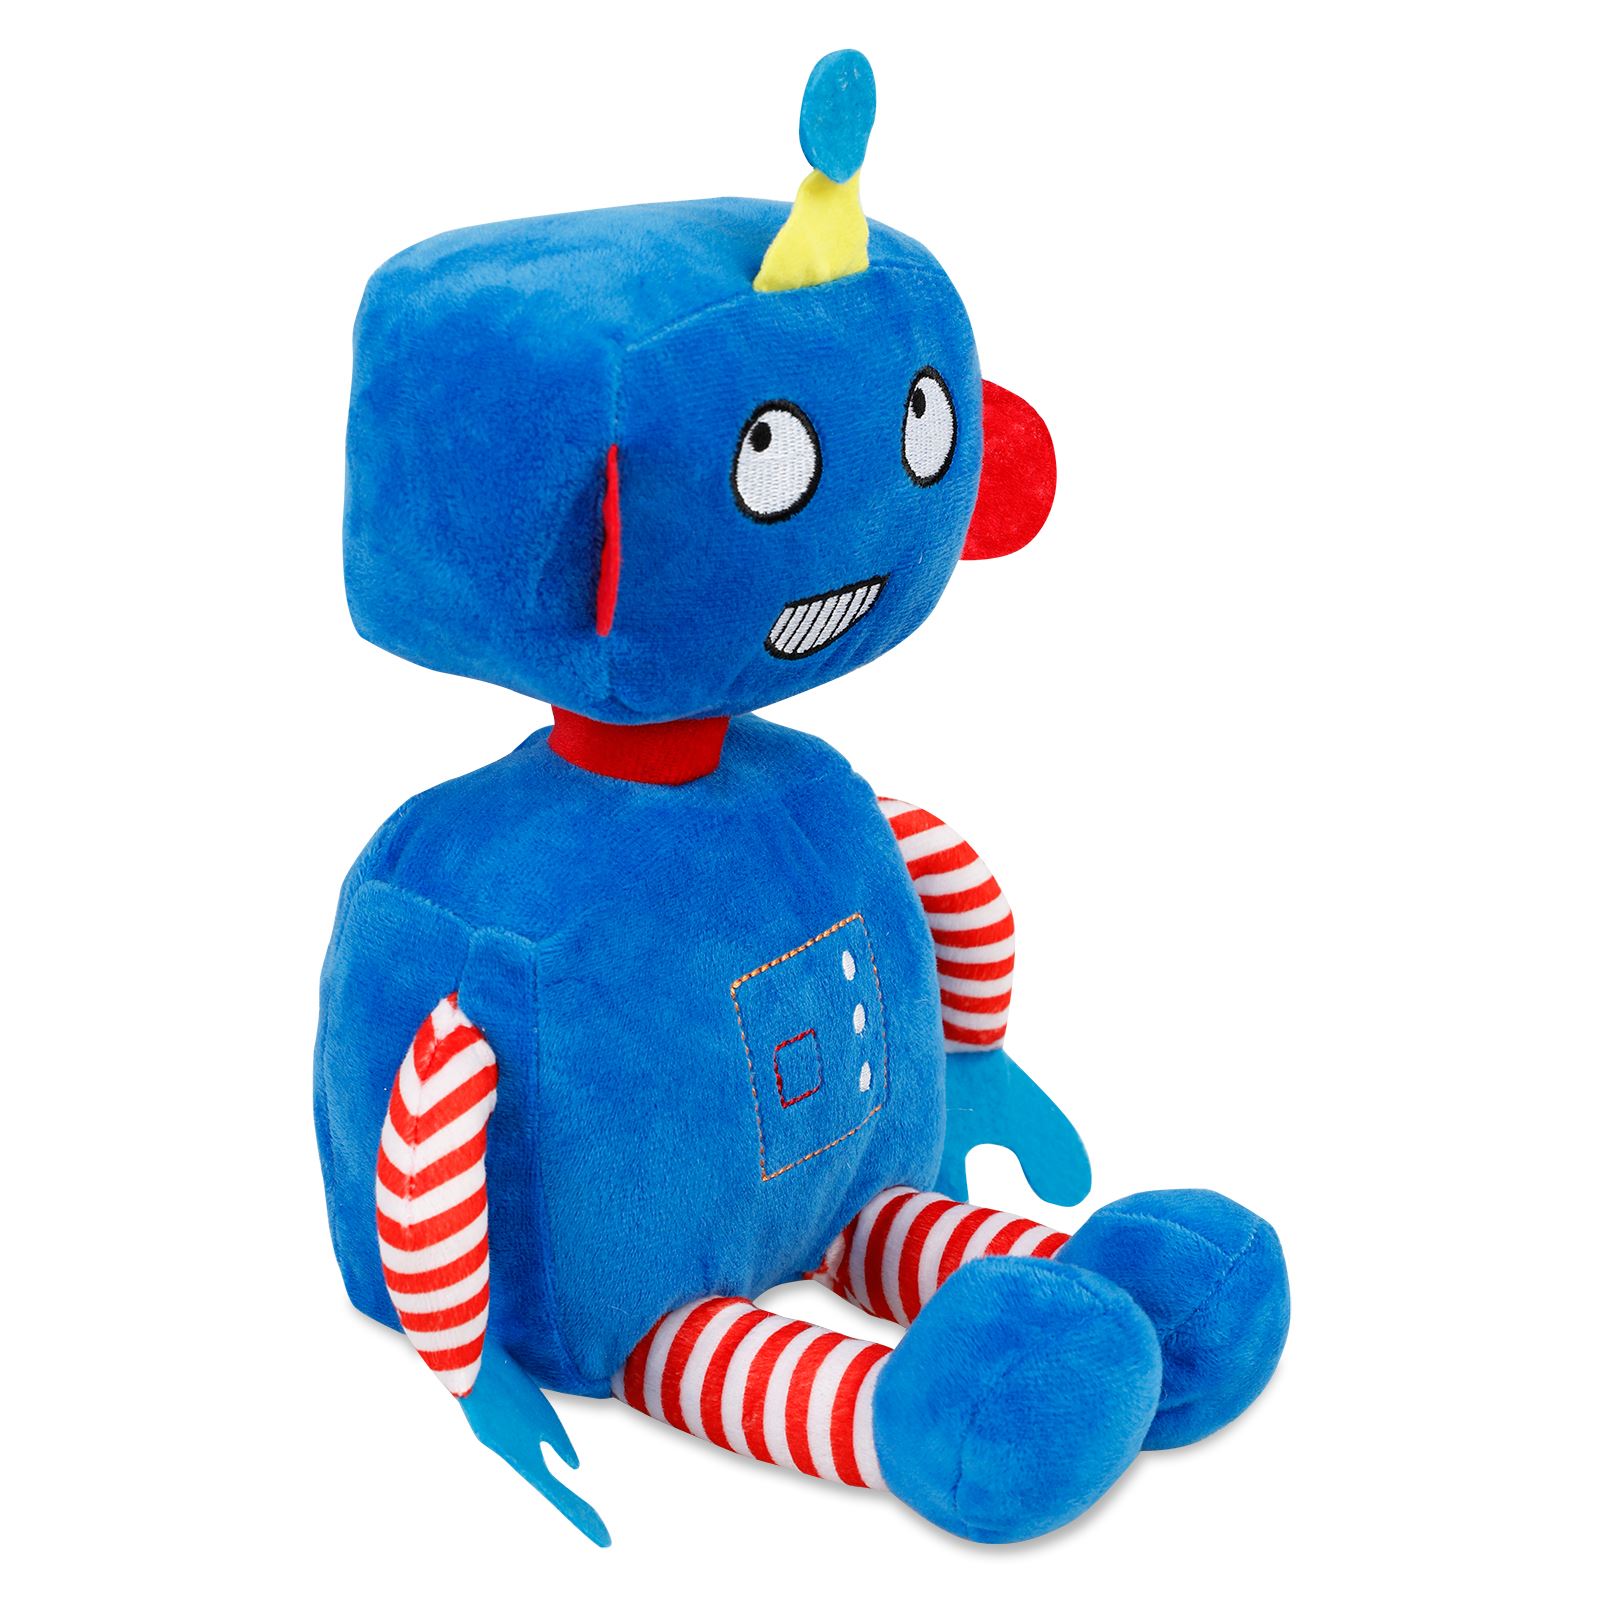 Halley Oyuncak Peluş Robotlar 35 cm Mavi